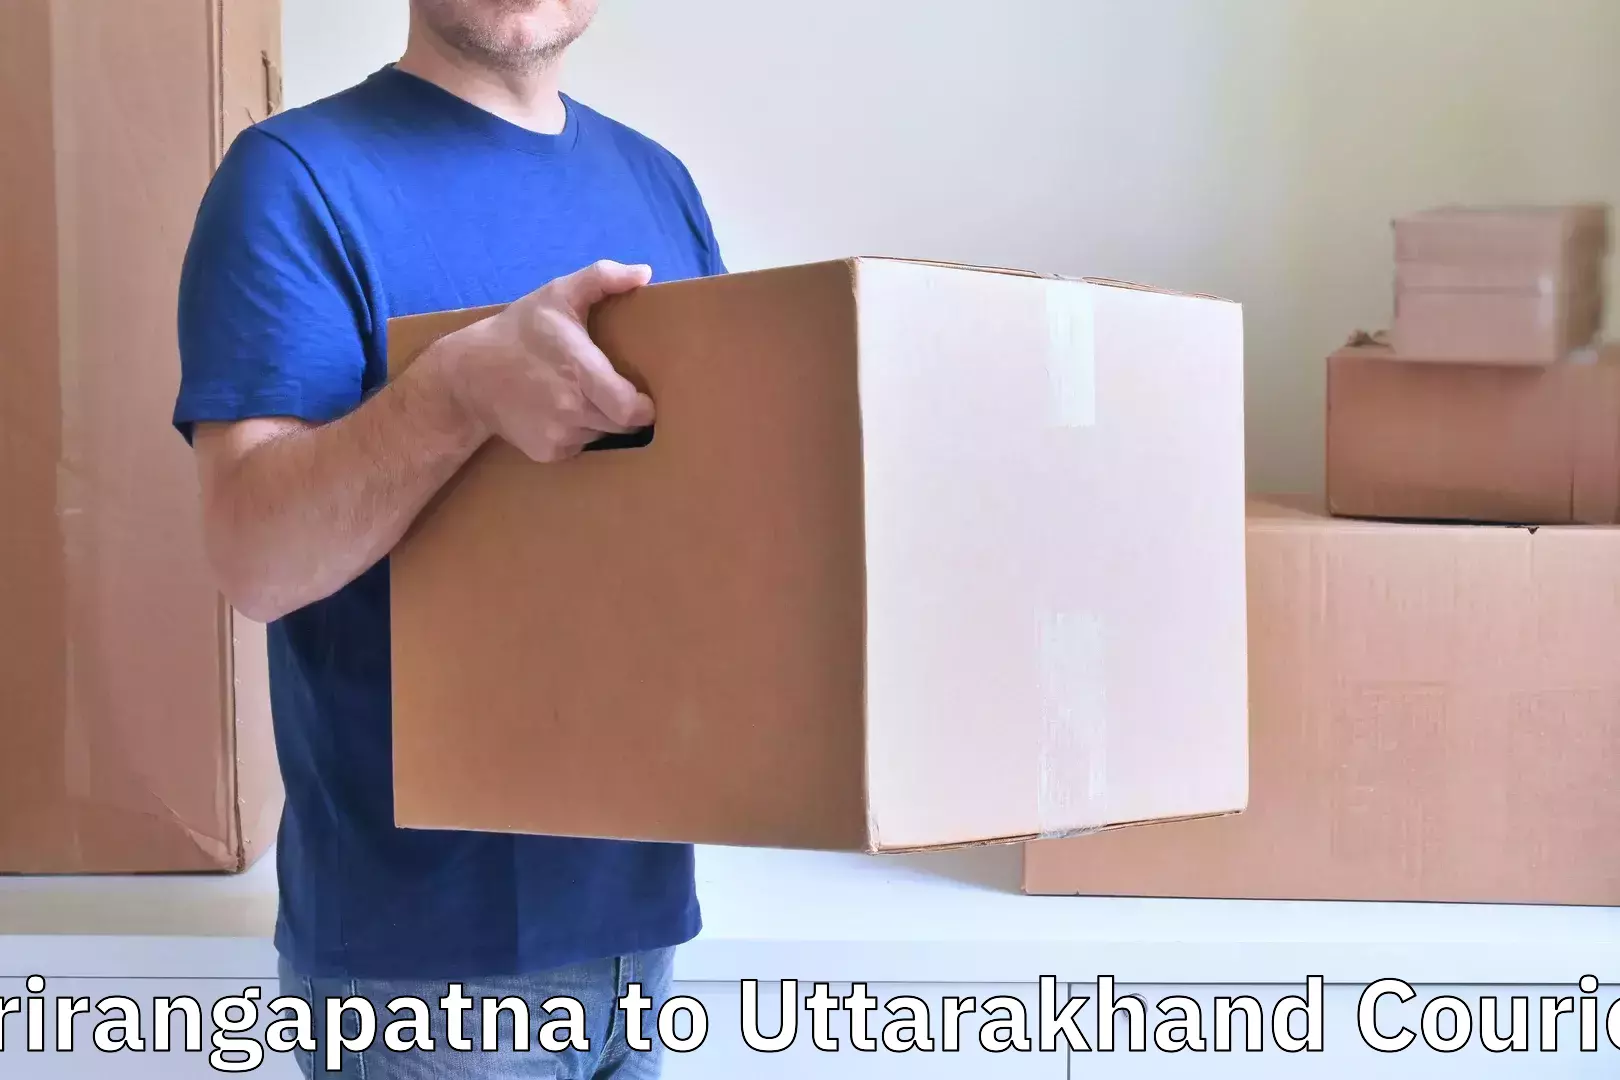 Baggage transport innovation Srirangapatna to Uttarakhand